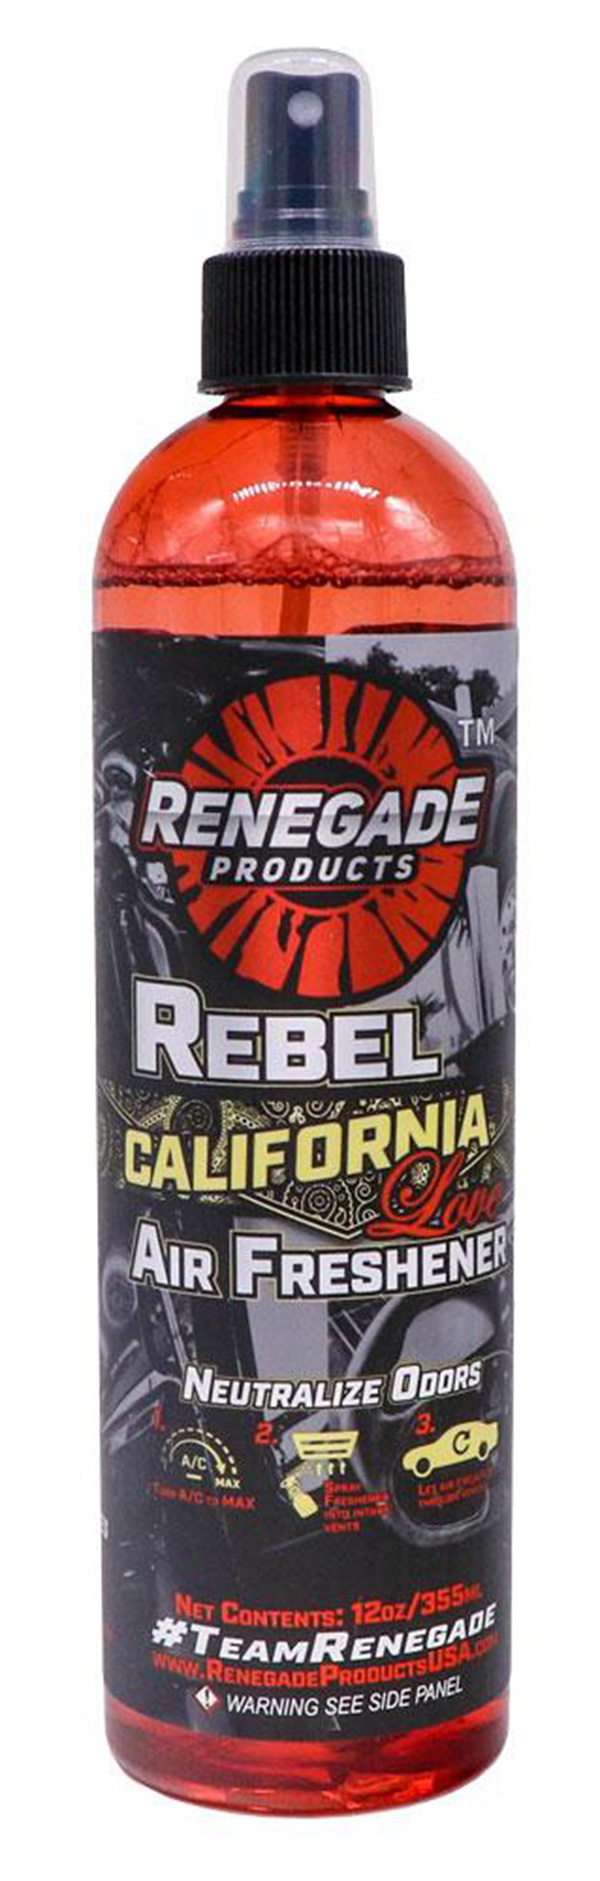 Renegade Rebel California Love Air Freshener, 12oz